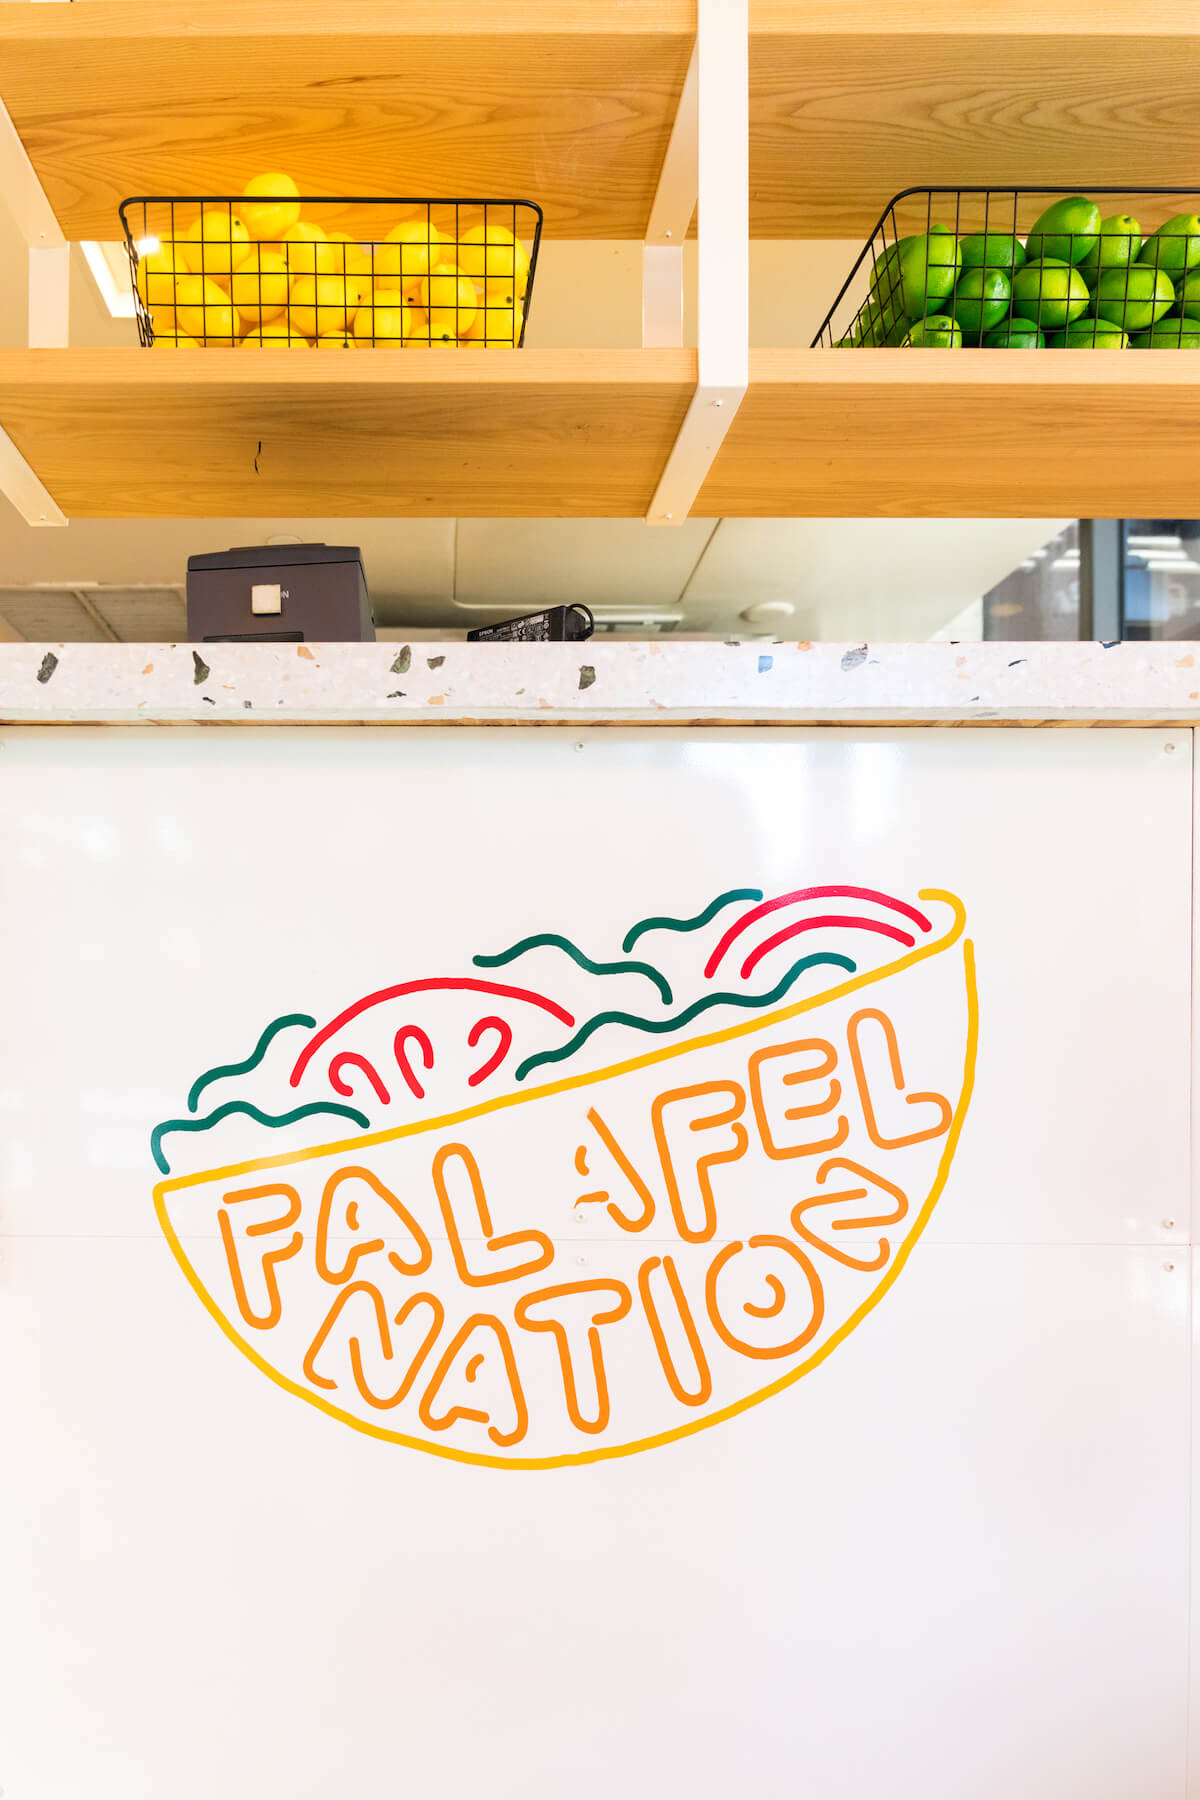 Falafel Nation